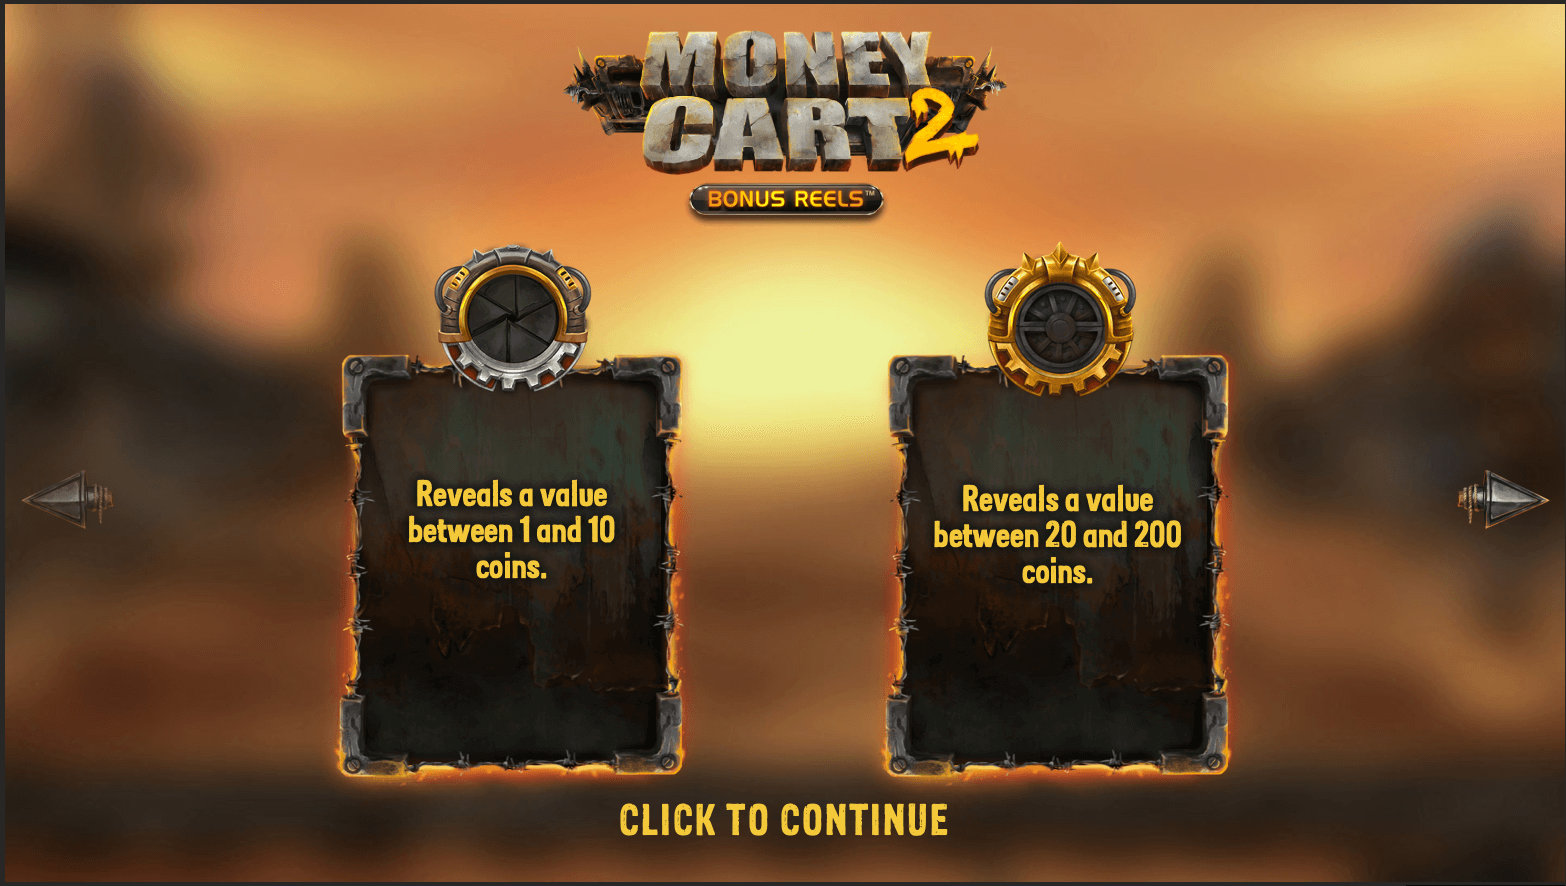 Money Cart 2 Průběh hry